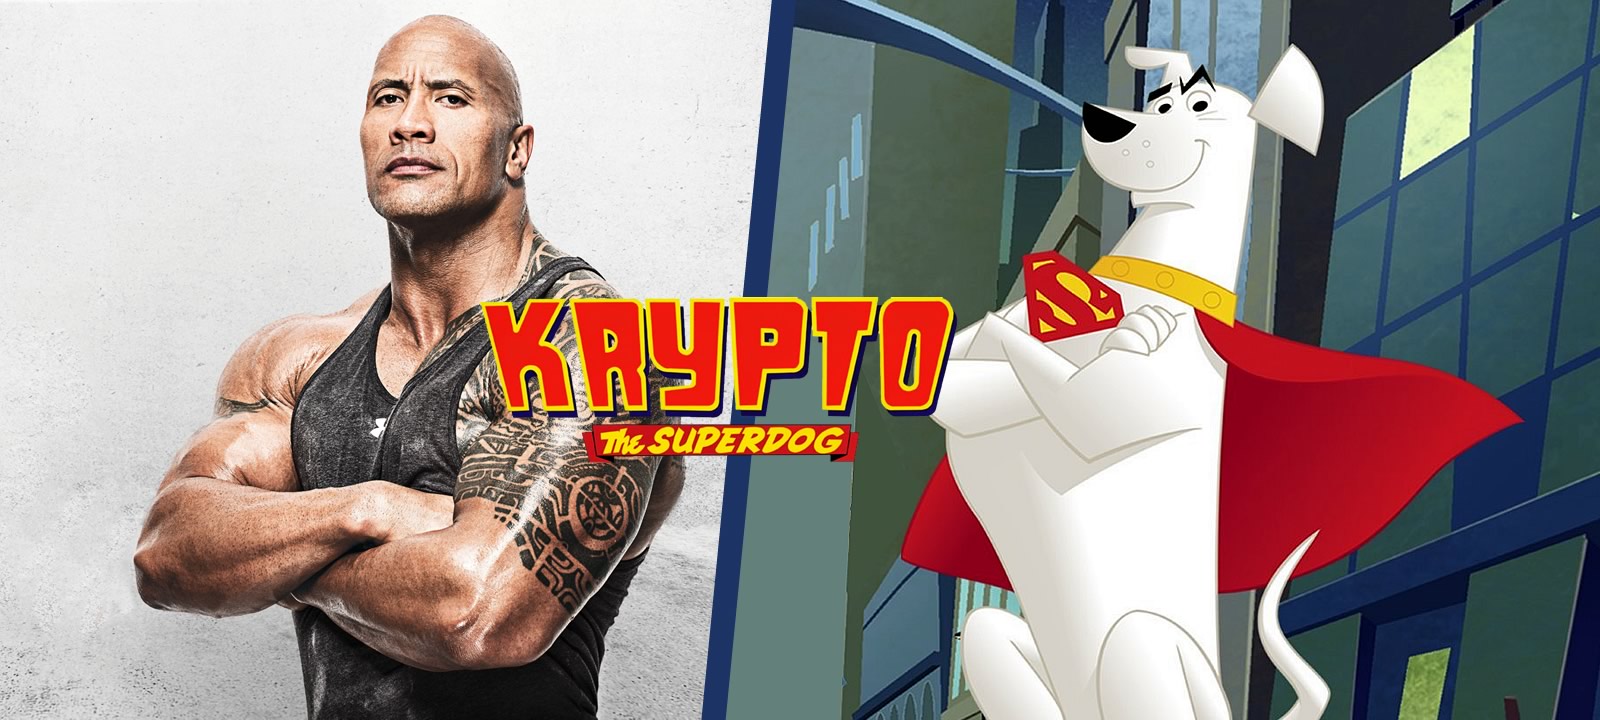 DC League of Super-Pets | Dwayne Johnson emprestará sua voz para Krypto, o Supercão